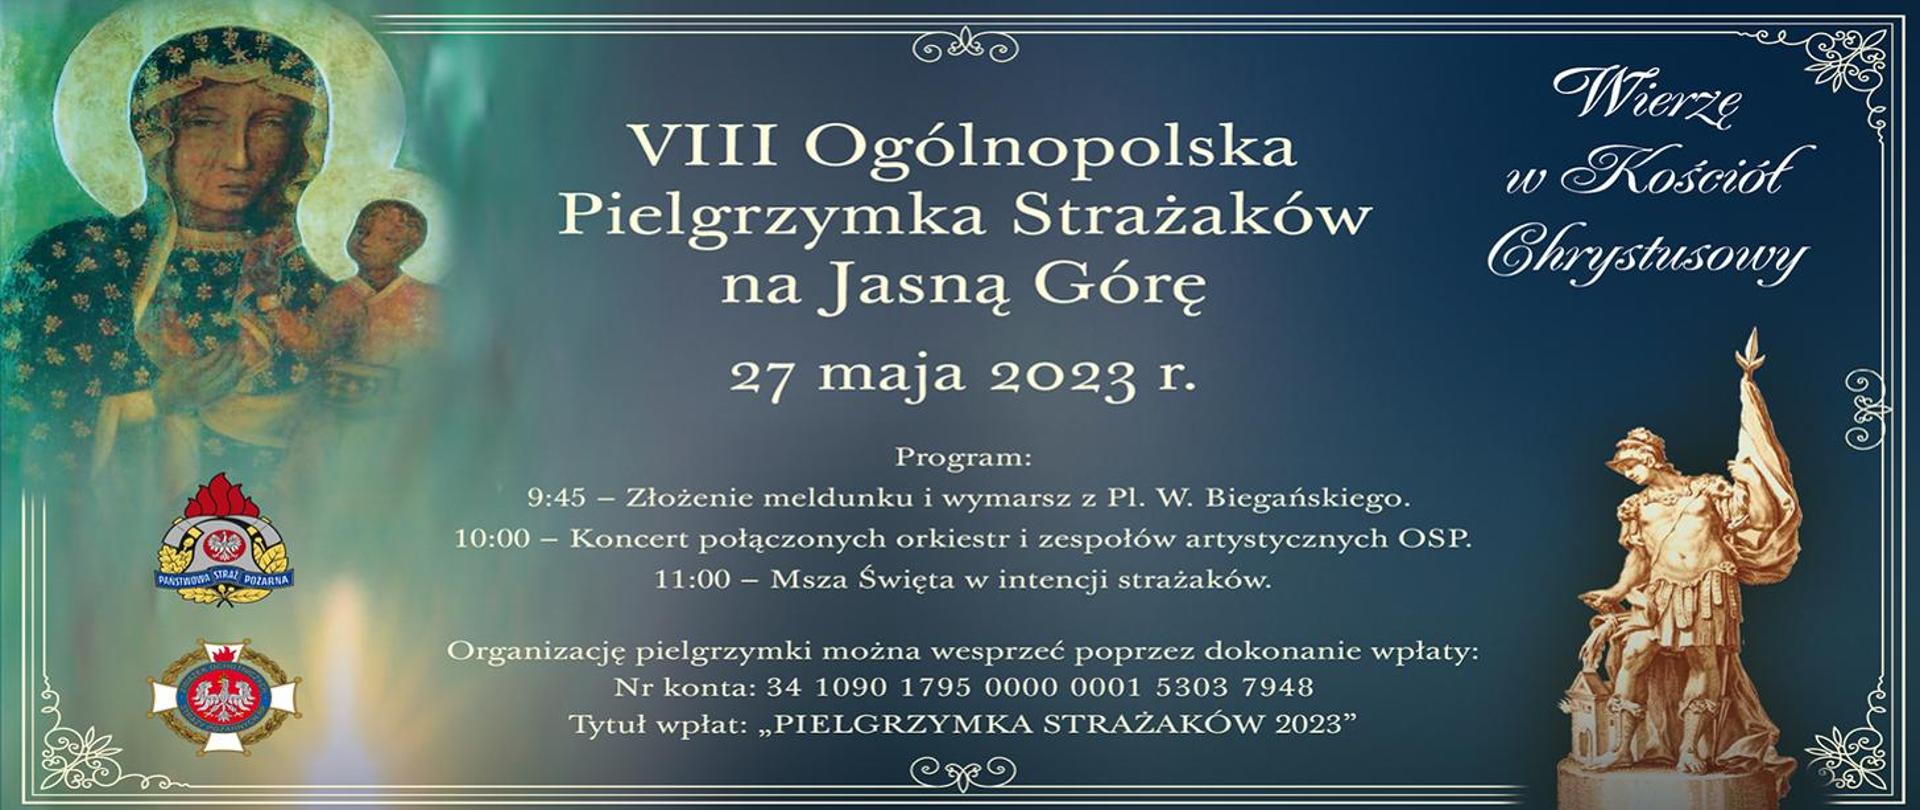 panorama plakatu VIII Ogólnopolskiej Pielgrzymki Strażaków na Jasną Górę